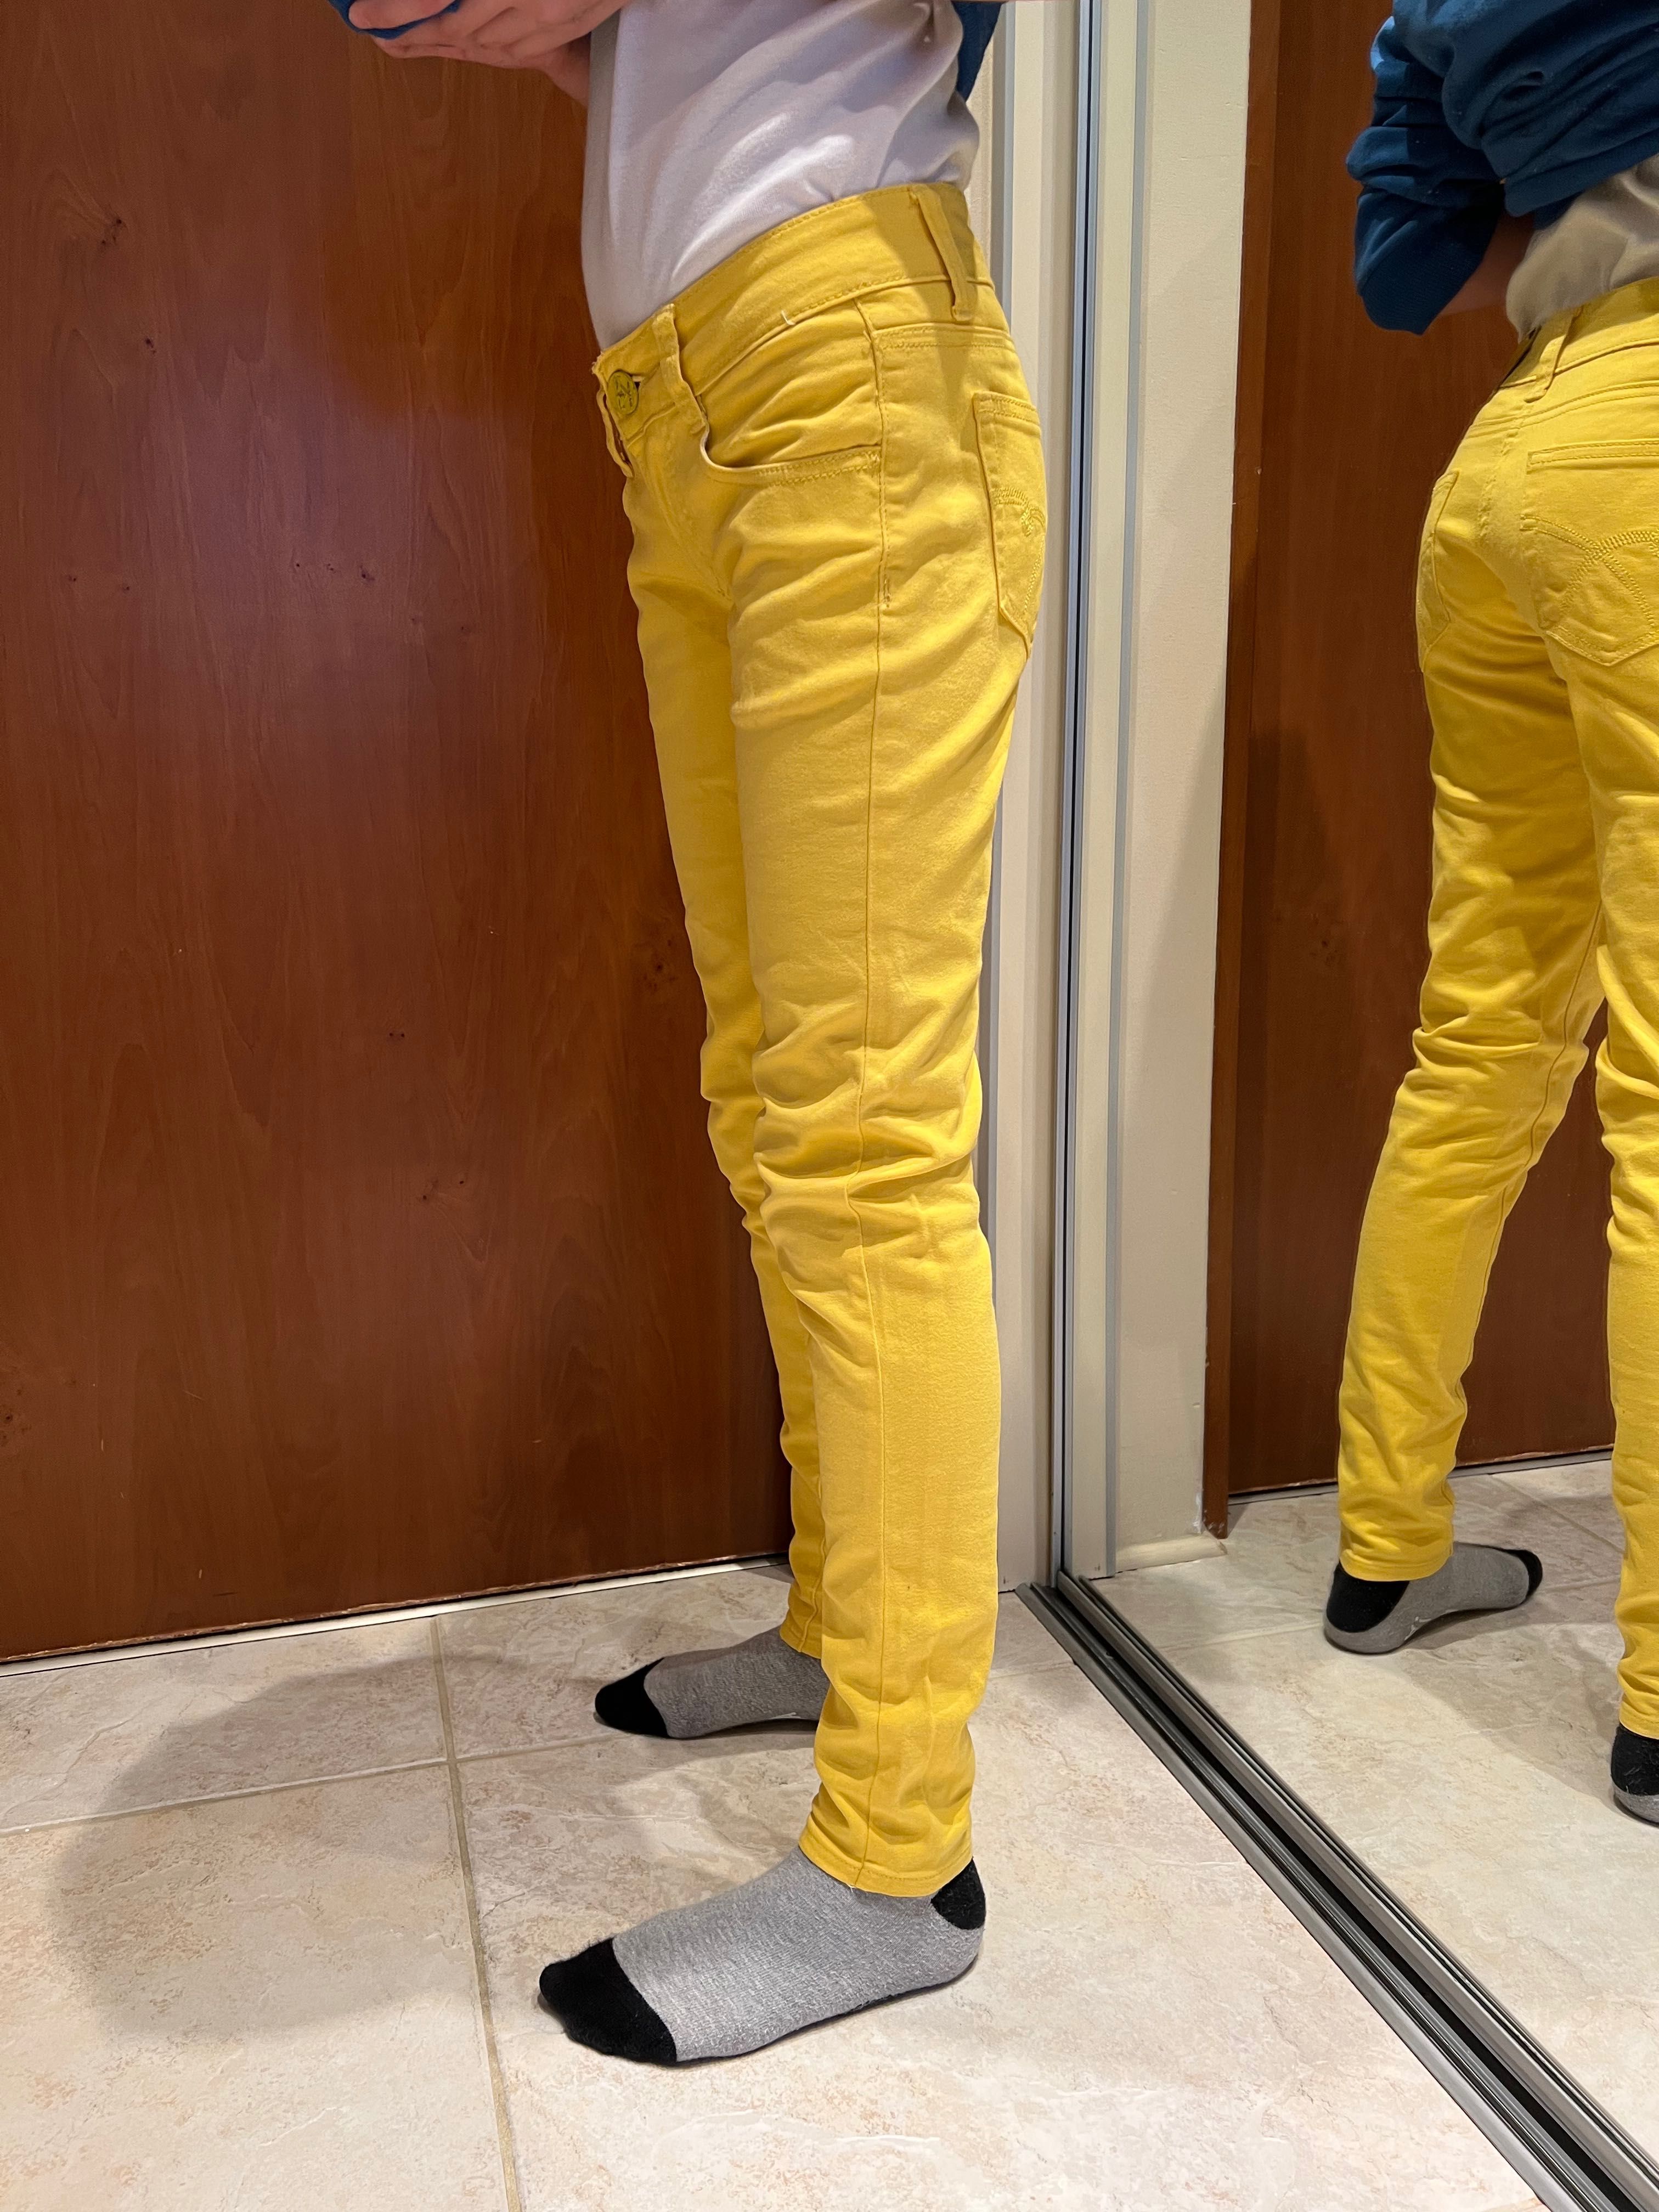 Jeansy żółte. Rozmiar 34, XS firmy Revers